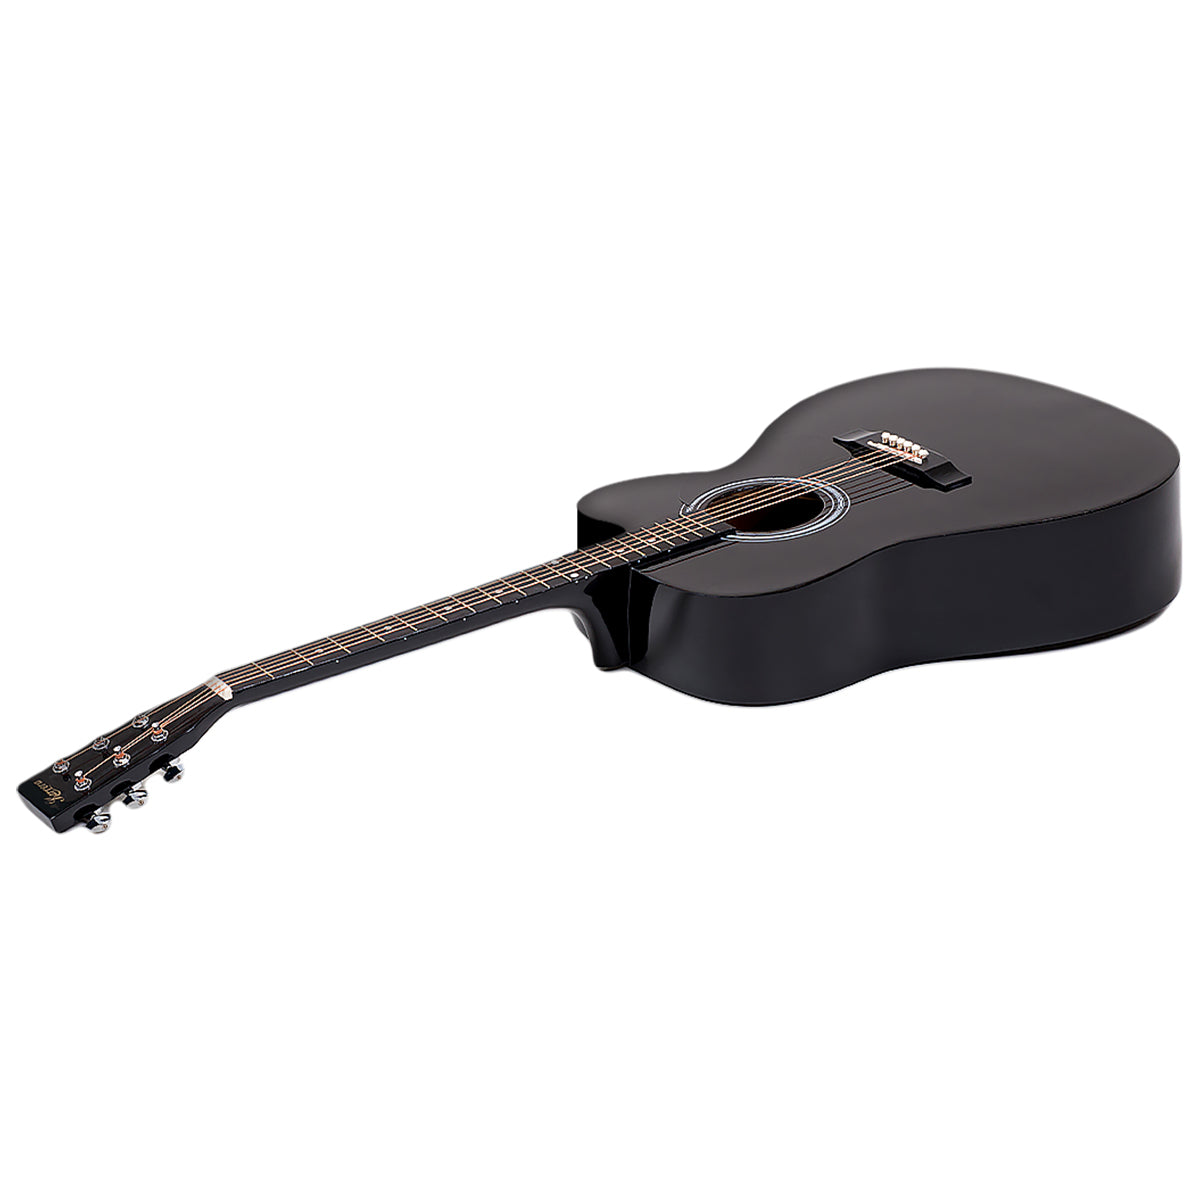 Karrera 38in Cutaway Acoustic Guitar with guitar bag - Black - SILBERSHELL